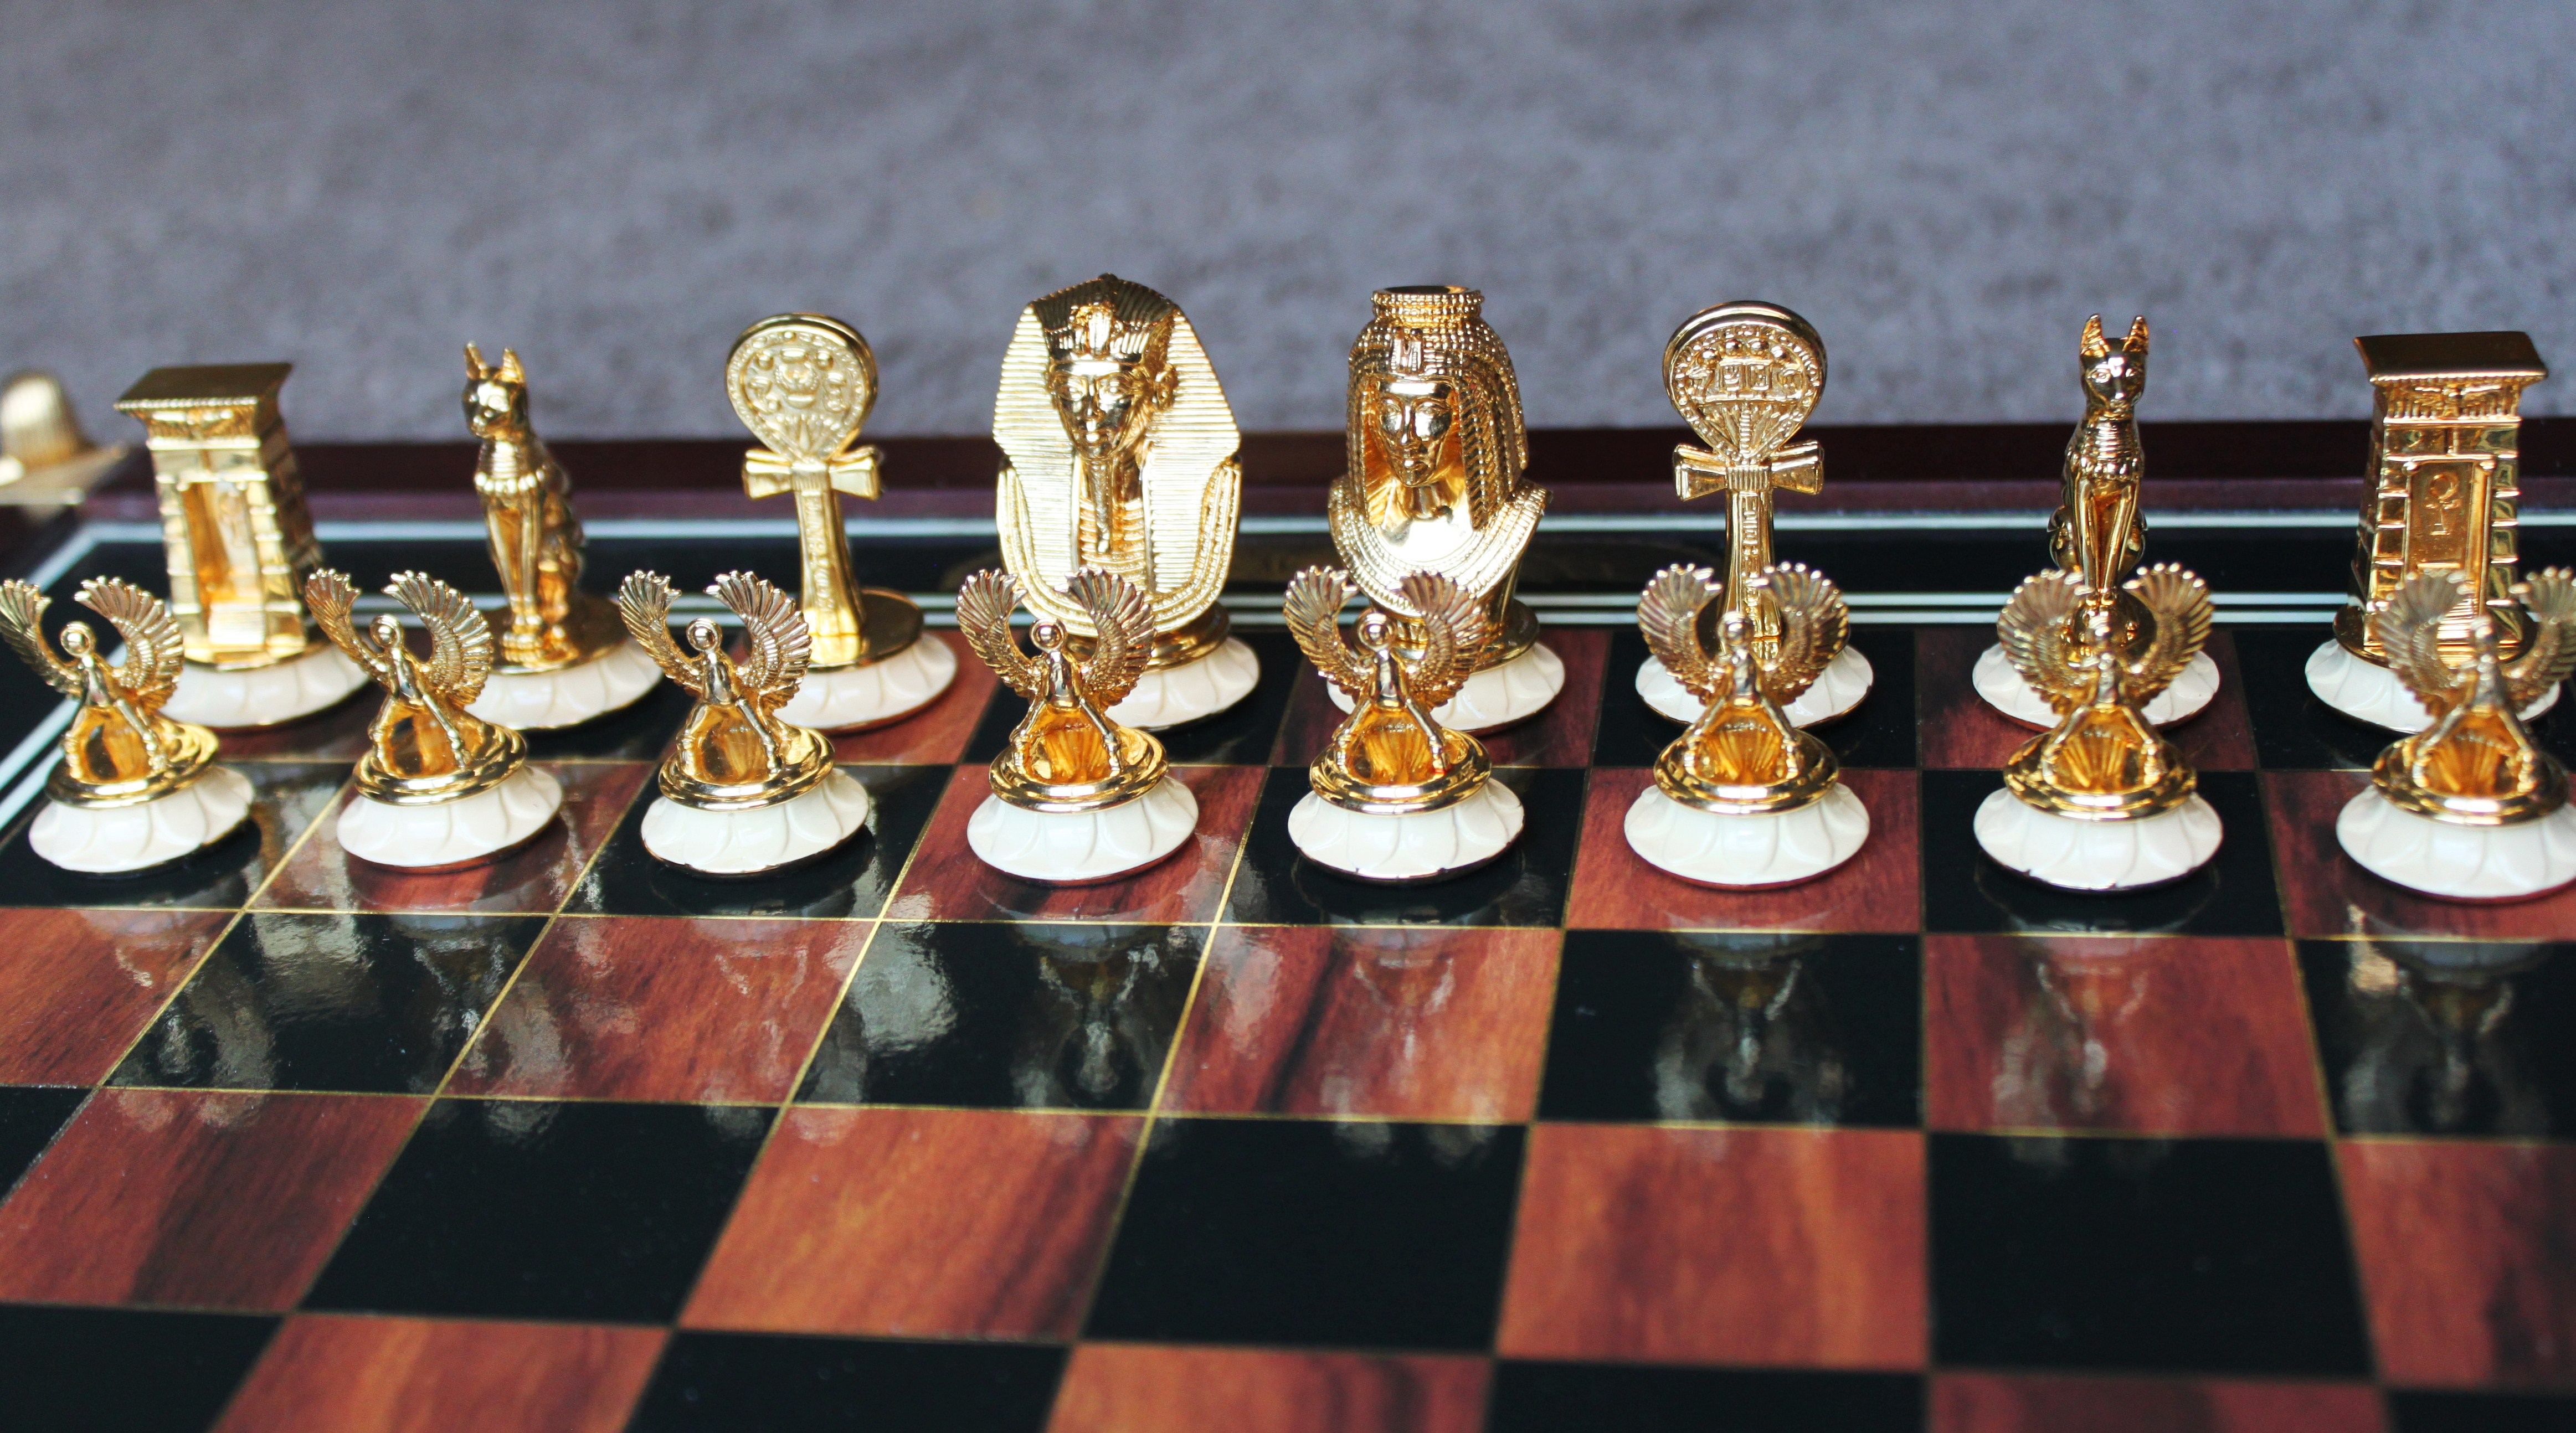 chess for beginners online uk